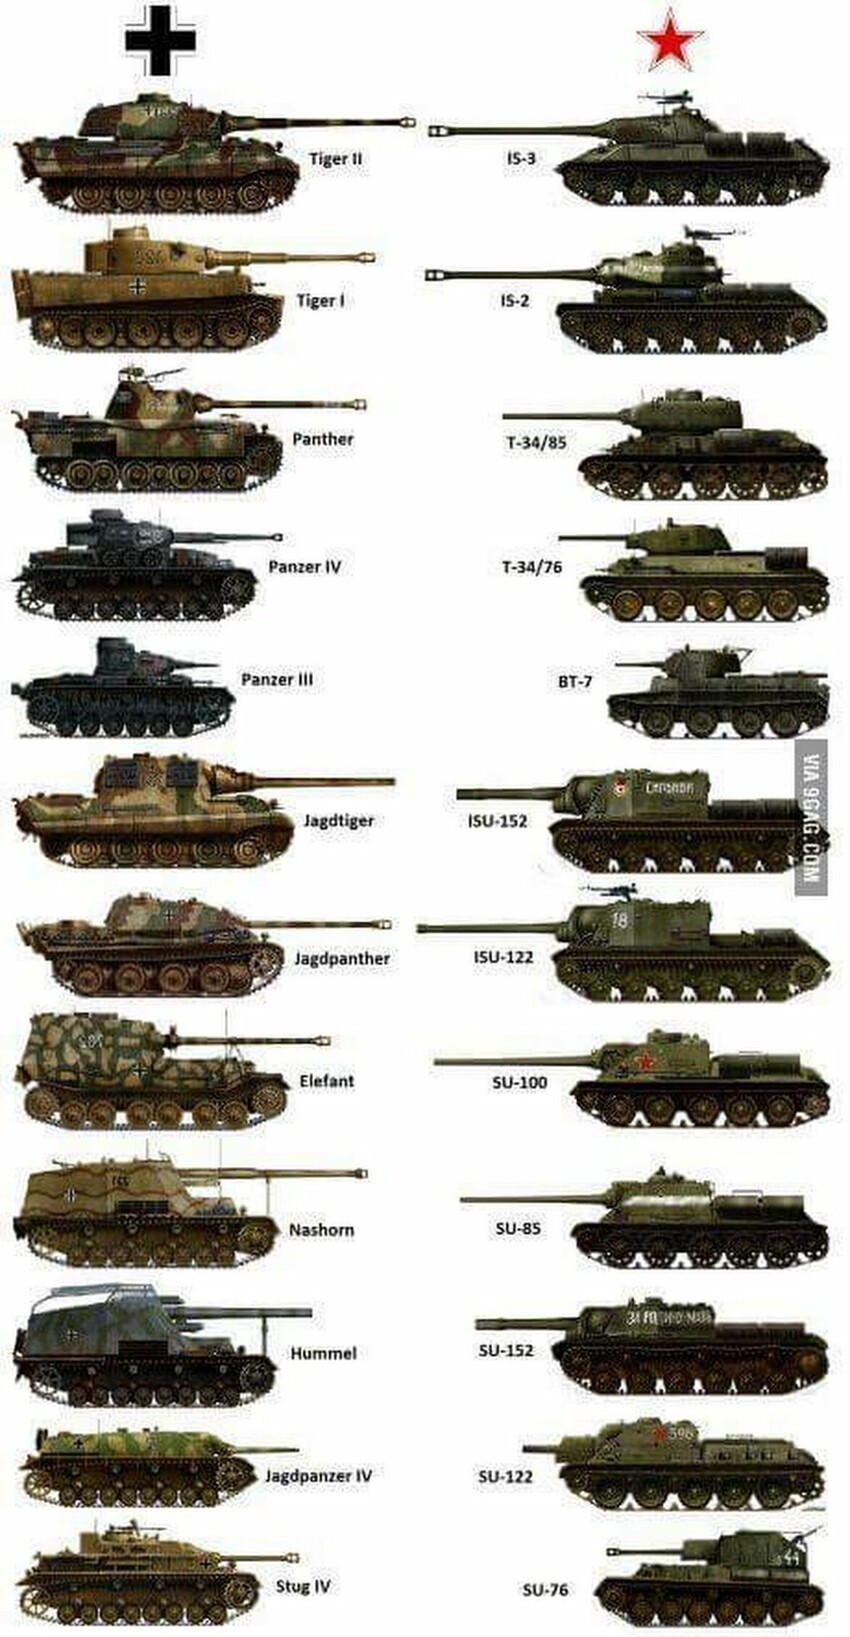 Название английского танка. Танки второй мировой войны немецкие танки. Танки 2 мировой войны СССР И Германии. Линейка немецких танков второй мировой войны. Полное название немецких танков второй мировой войны.